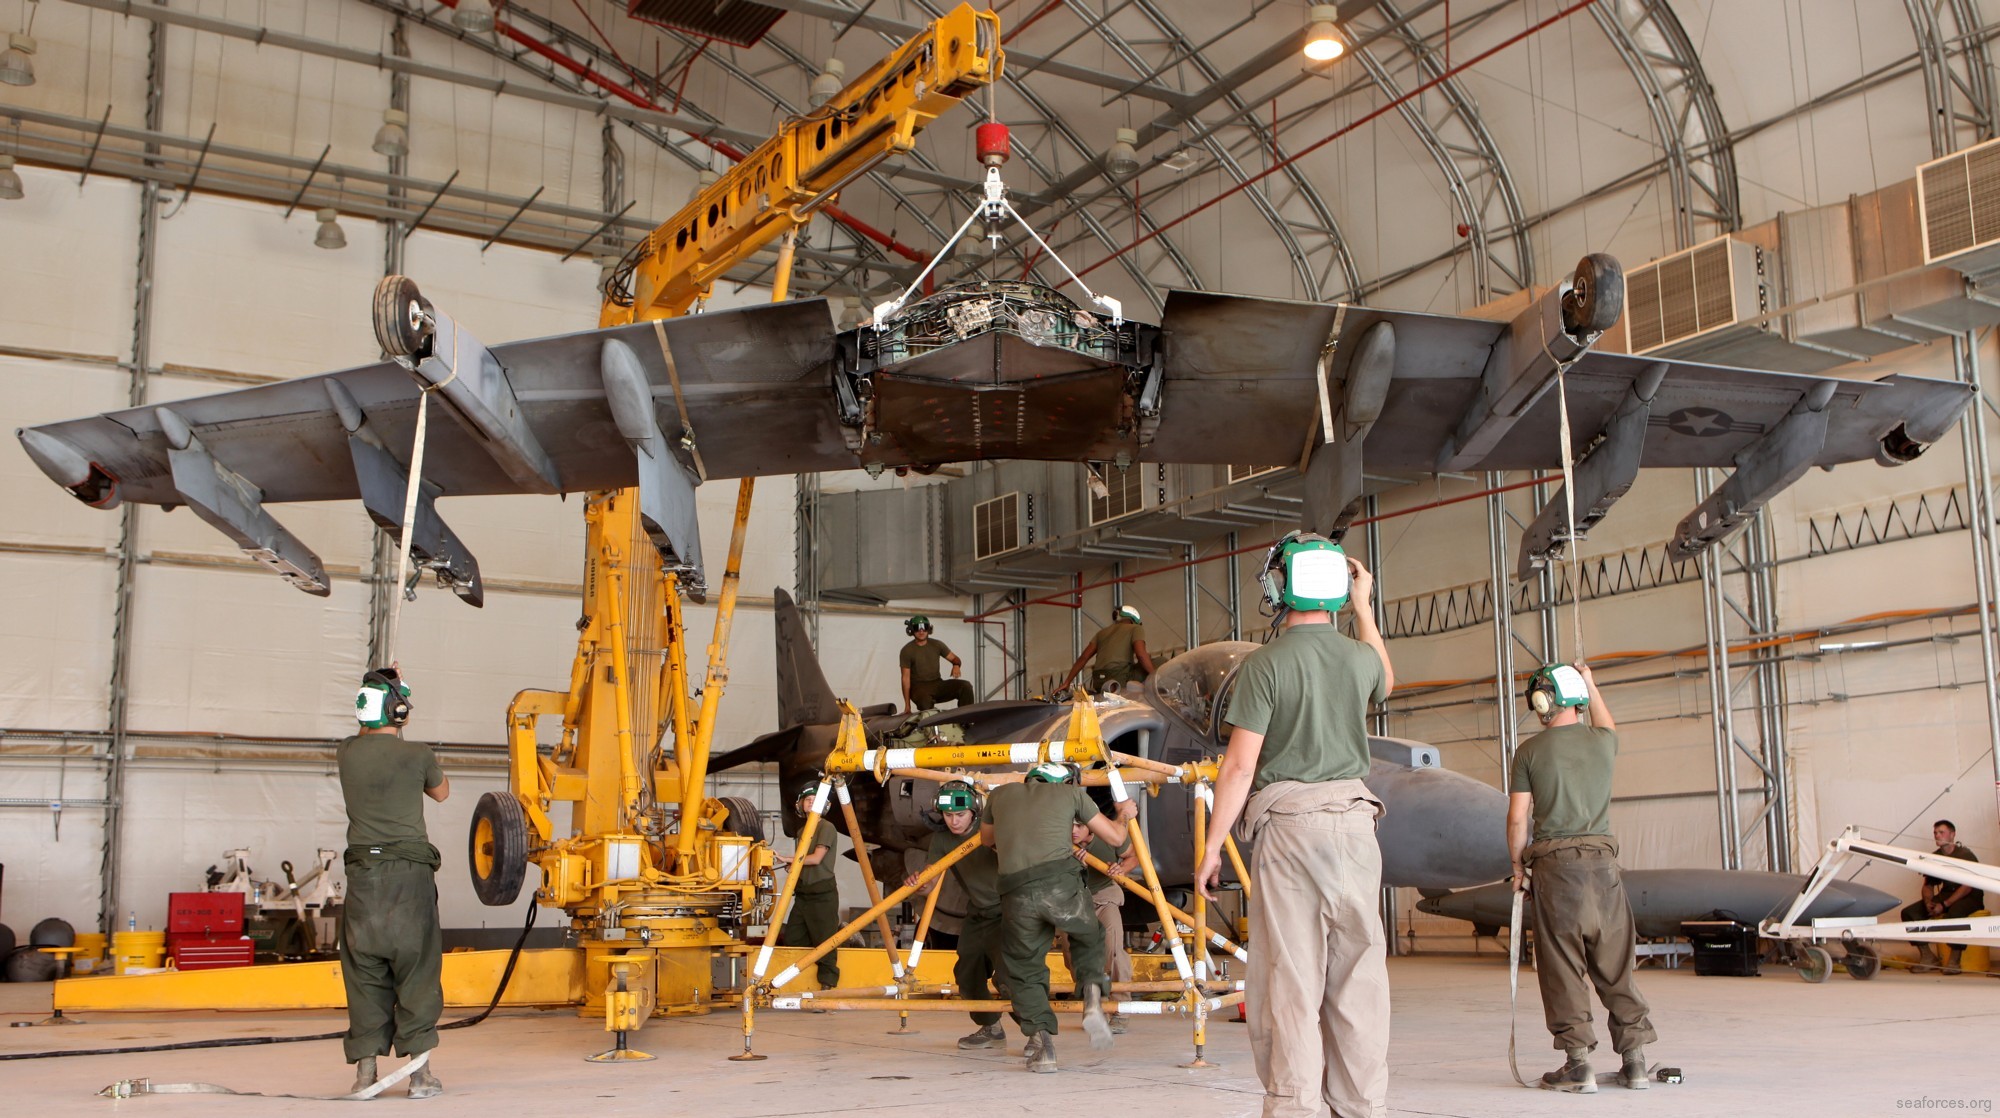 vma-211 avengers av-8b harrier maintenance afghanistan 2012